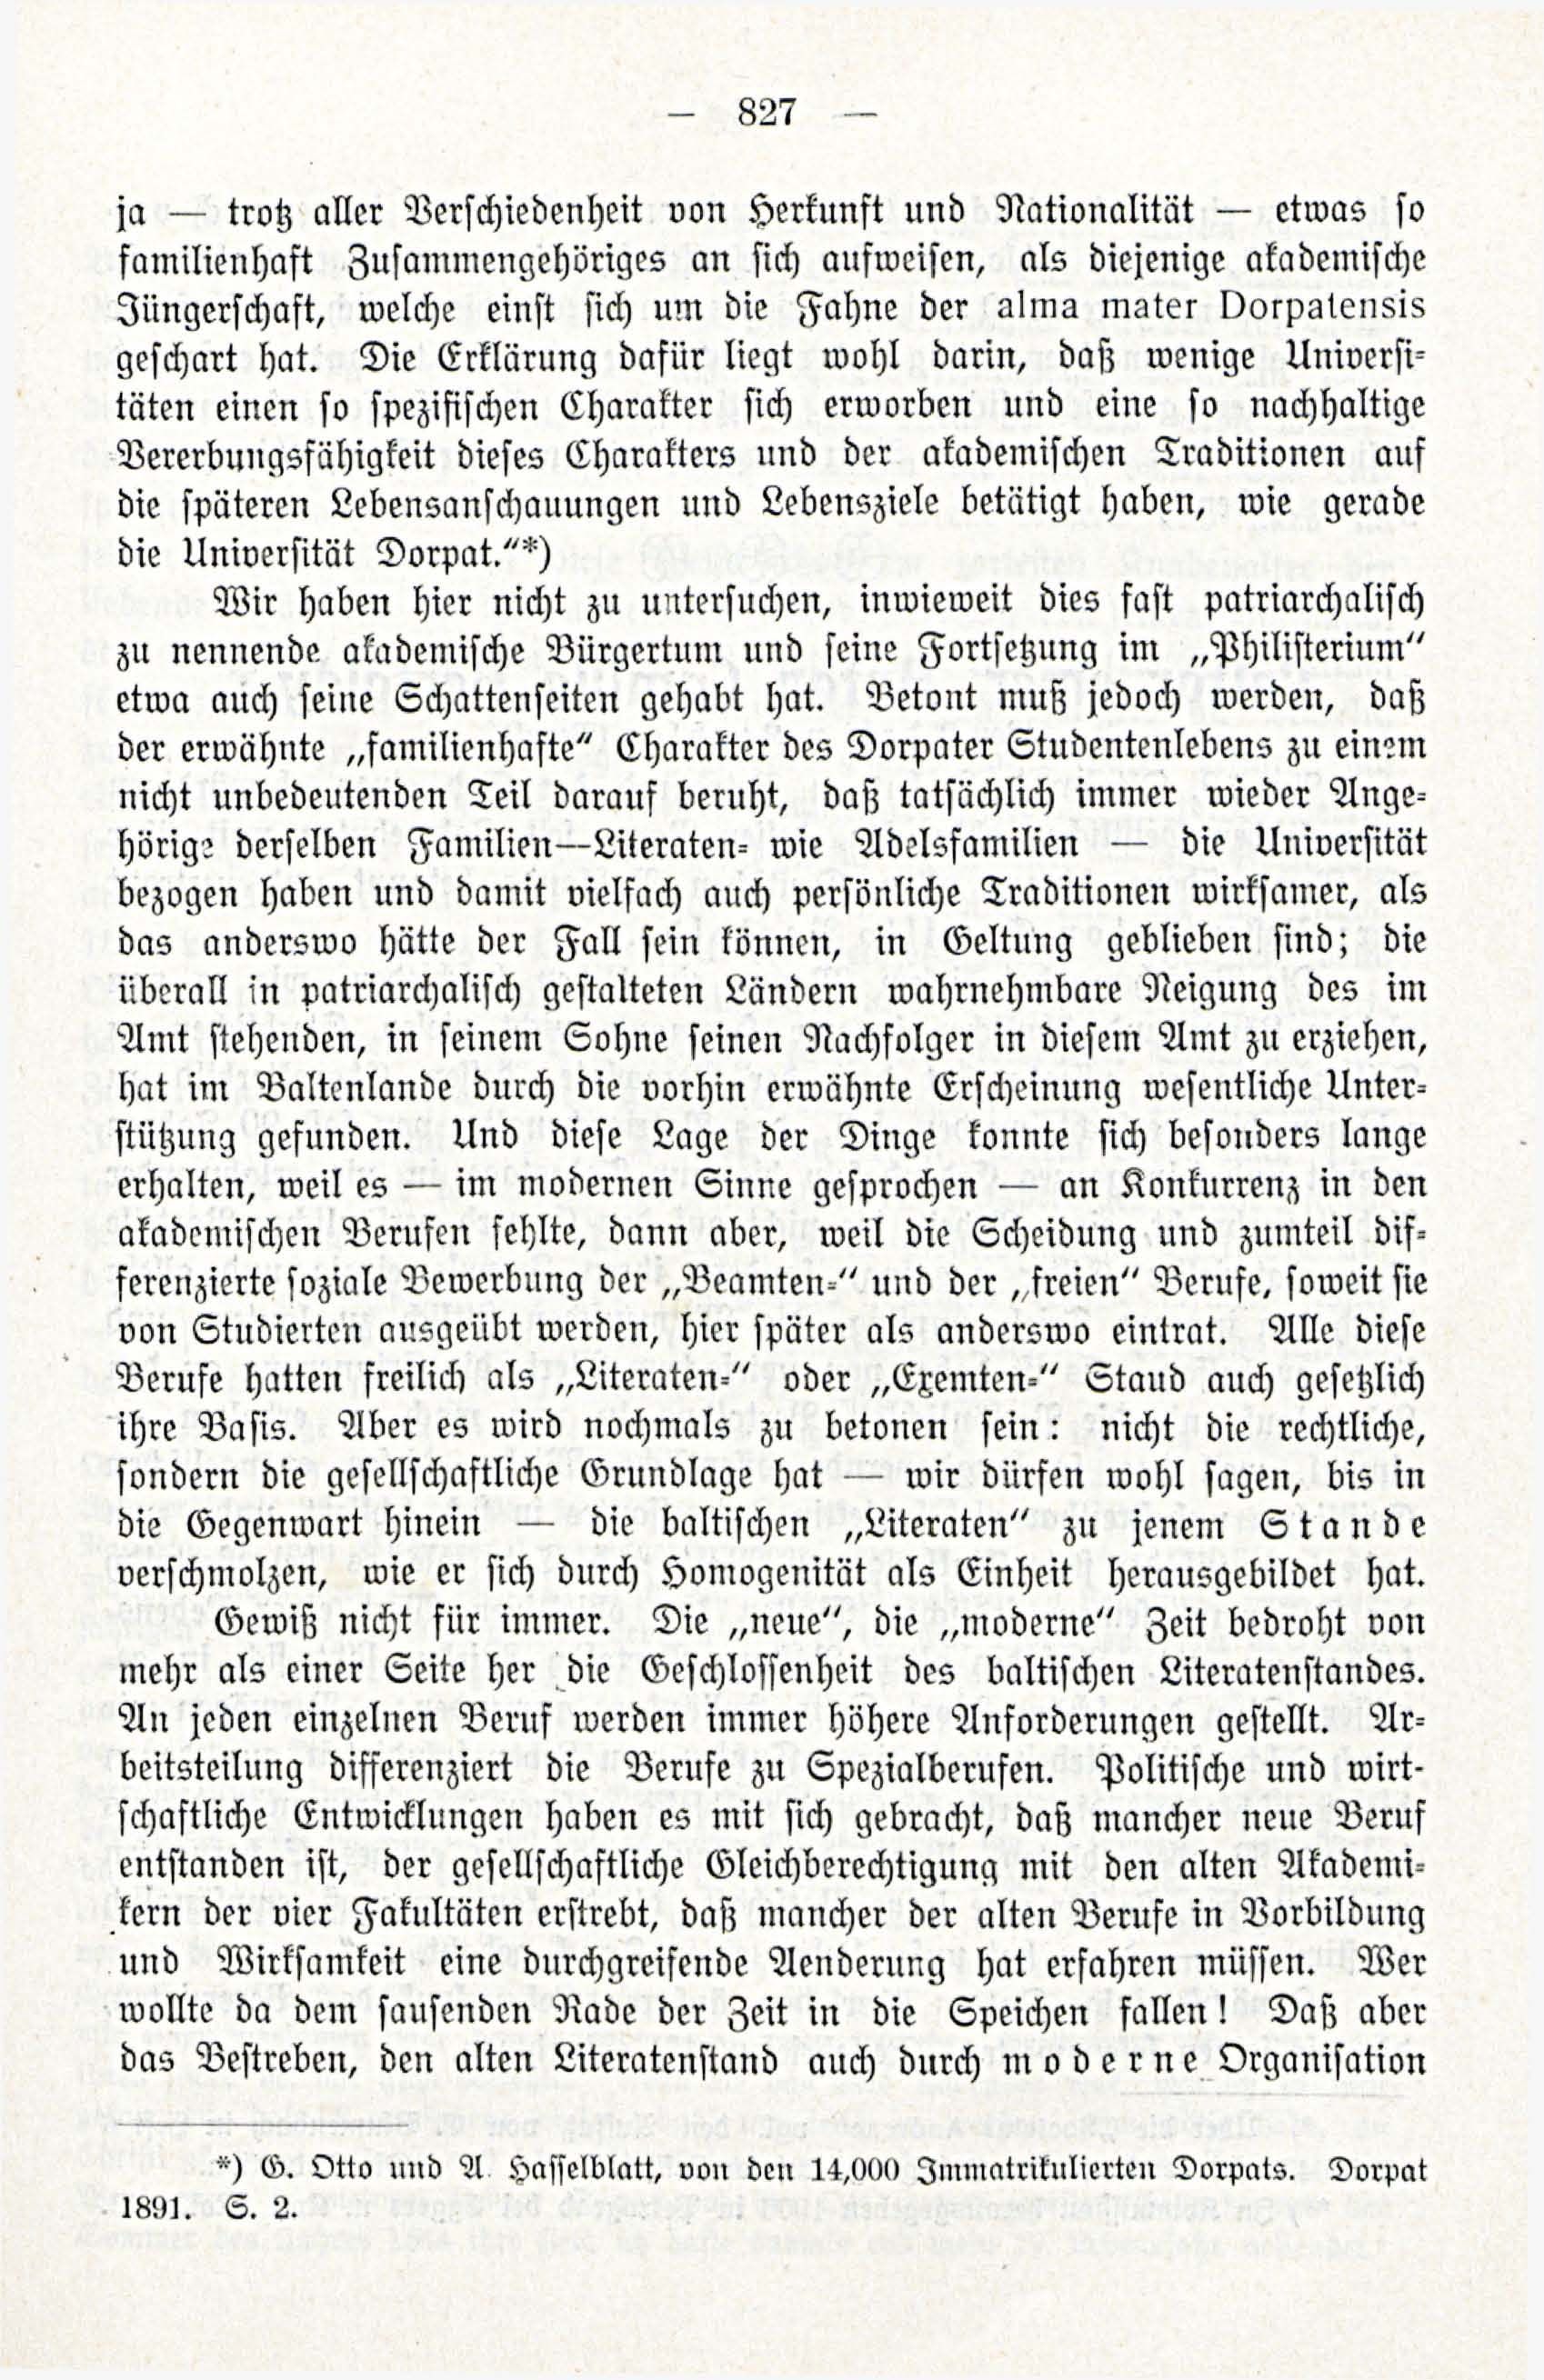 Zur Entwicklungesgescshichte des baltischen Literatenstandes (1914) | 9. (827) Haupttext